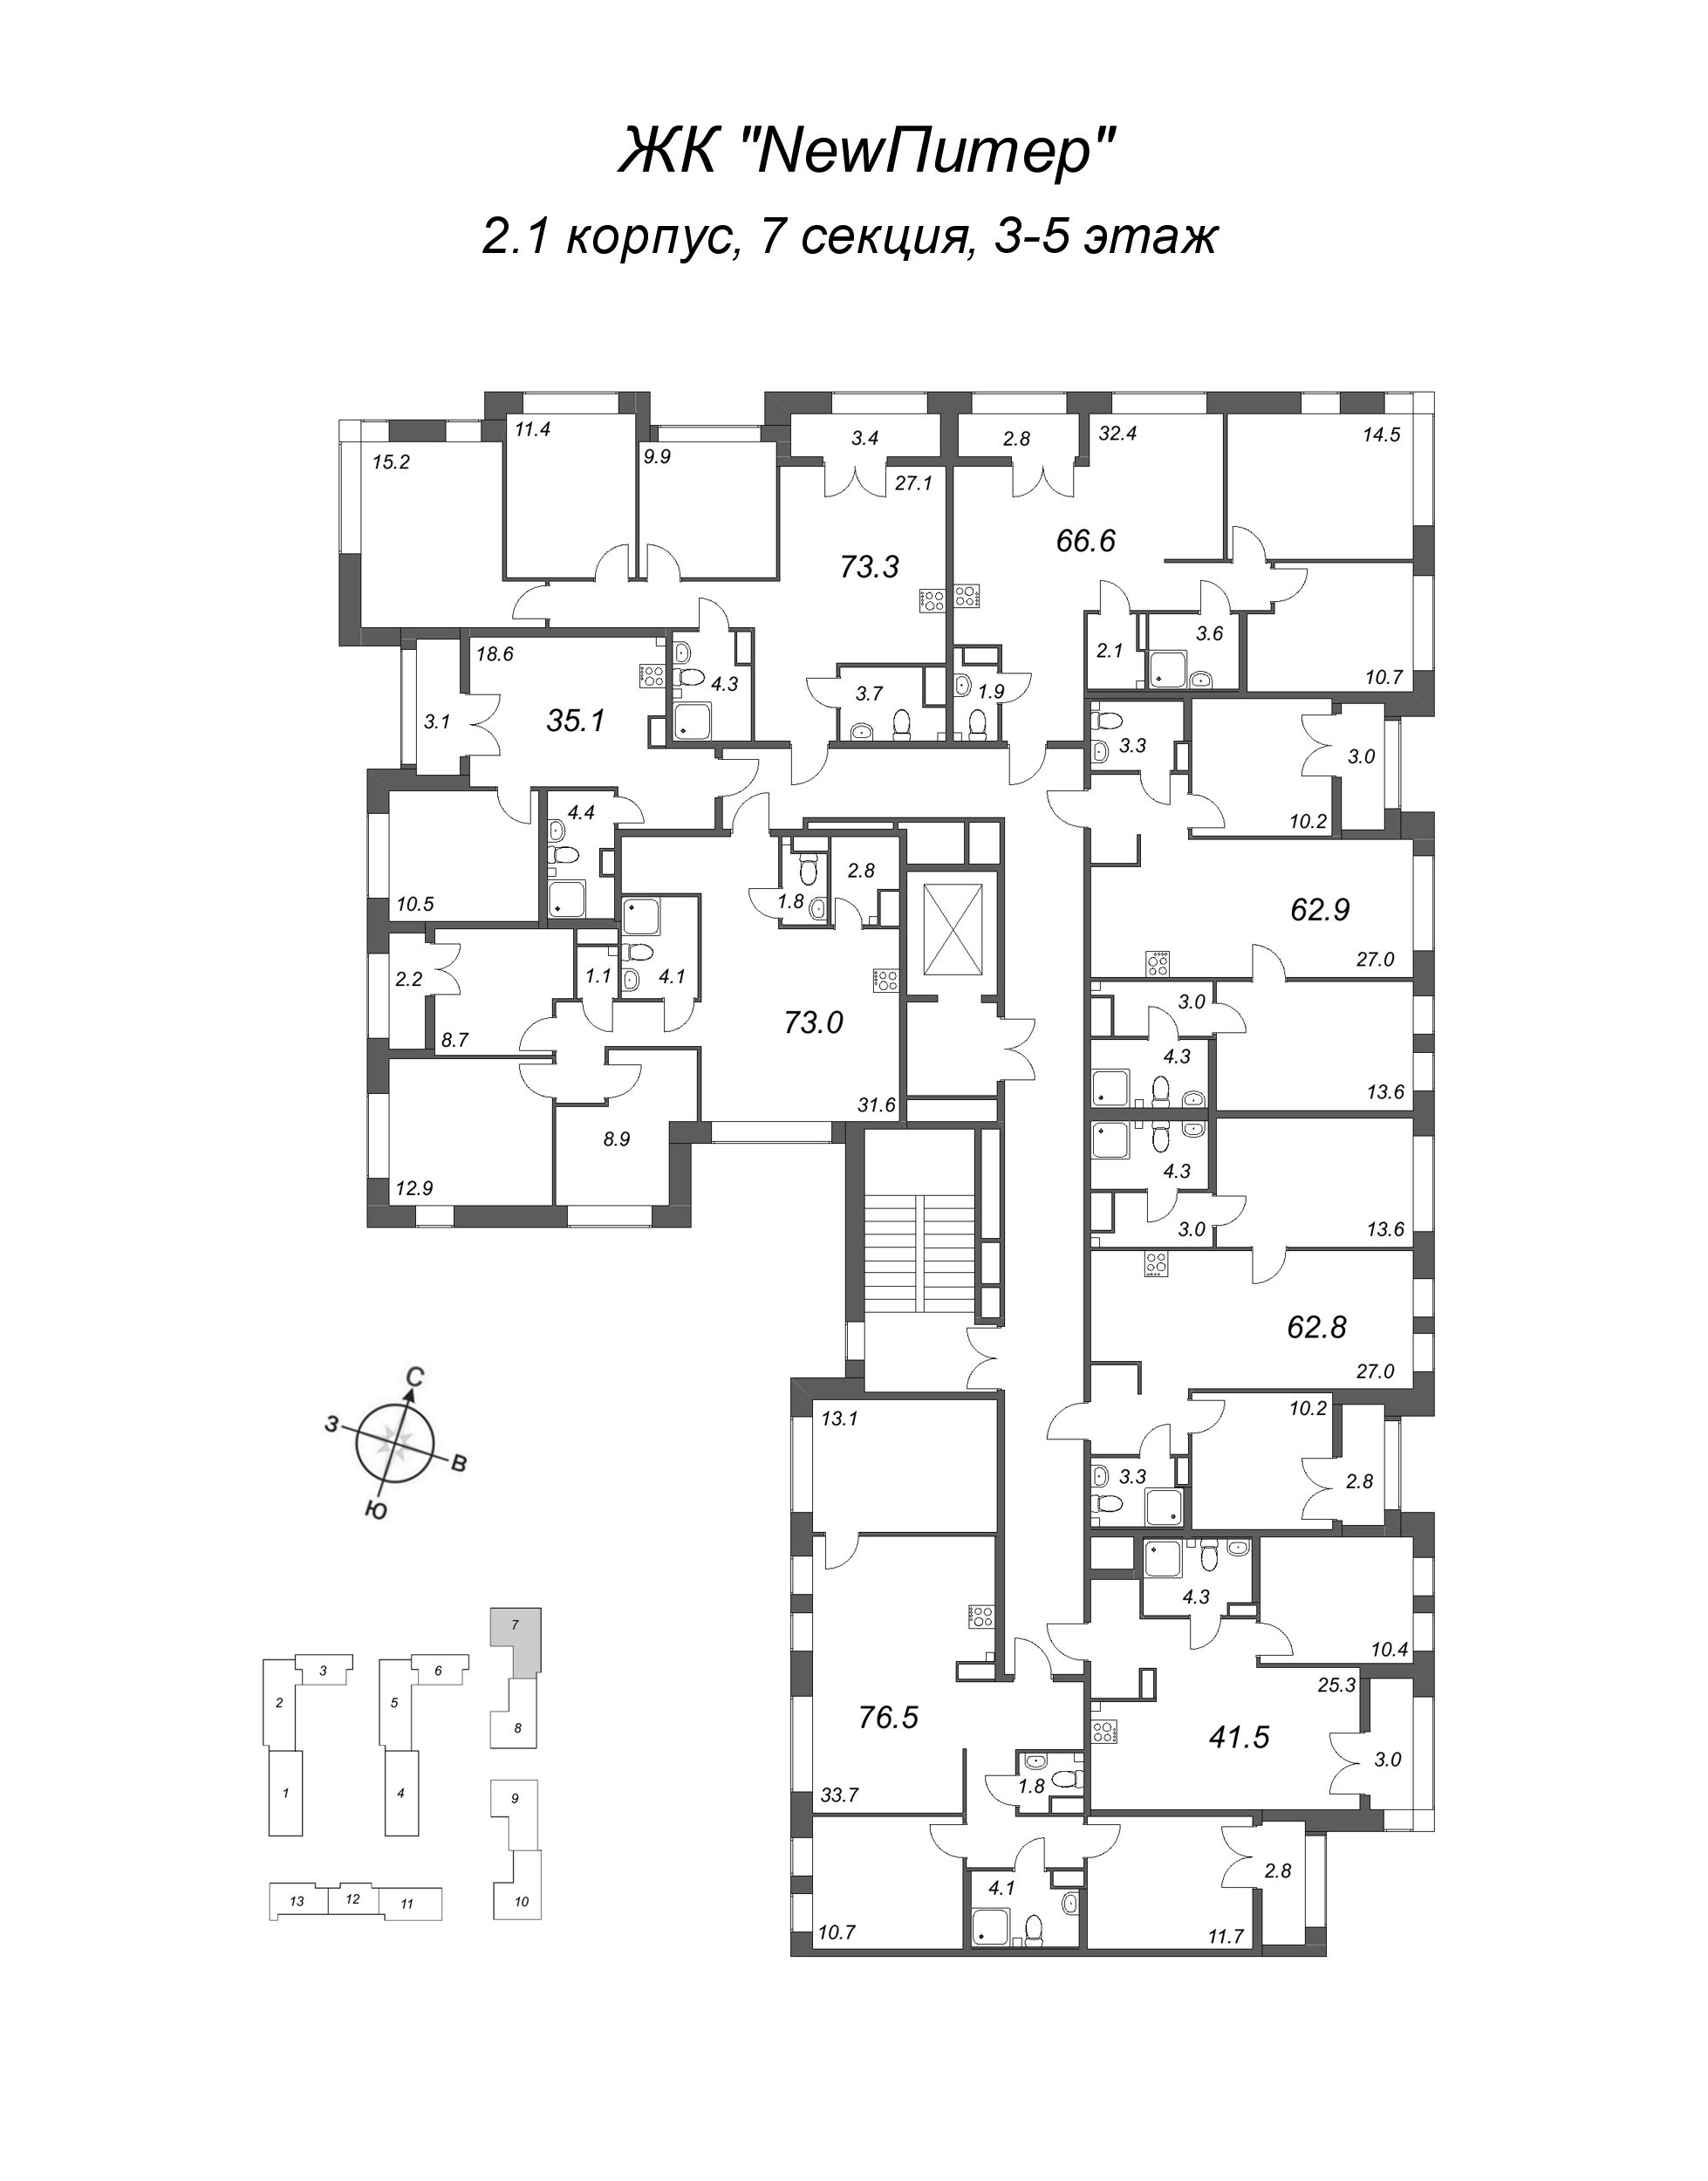 2-комнатная (Евро) квартира, 35.1 м² в ЖК "NewПитер 2.0" - планировка этажа